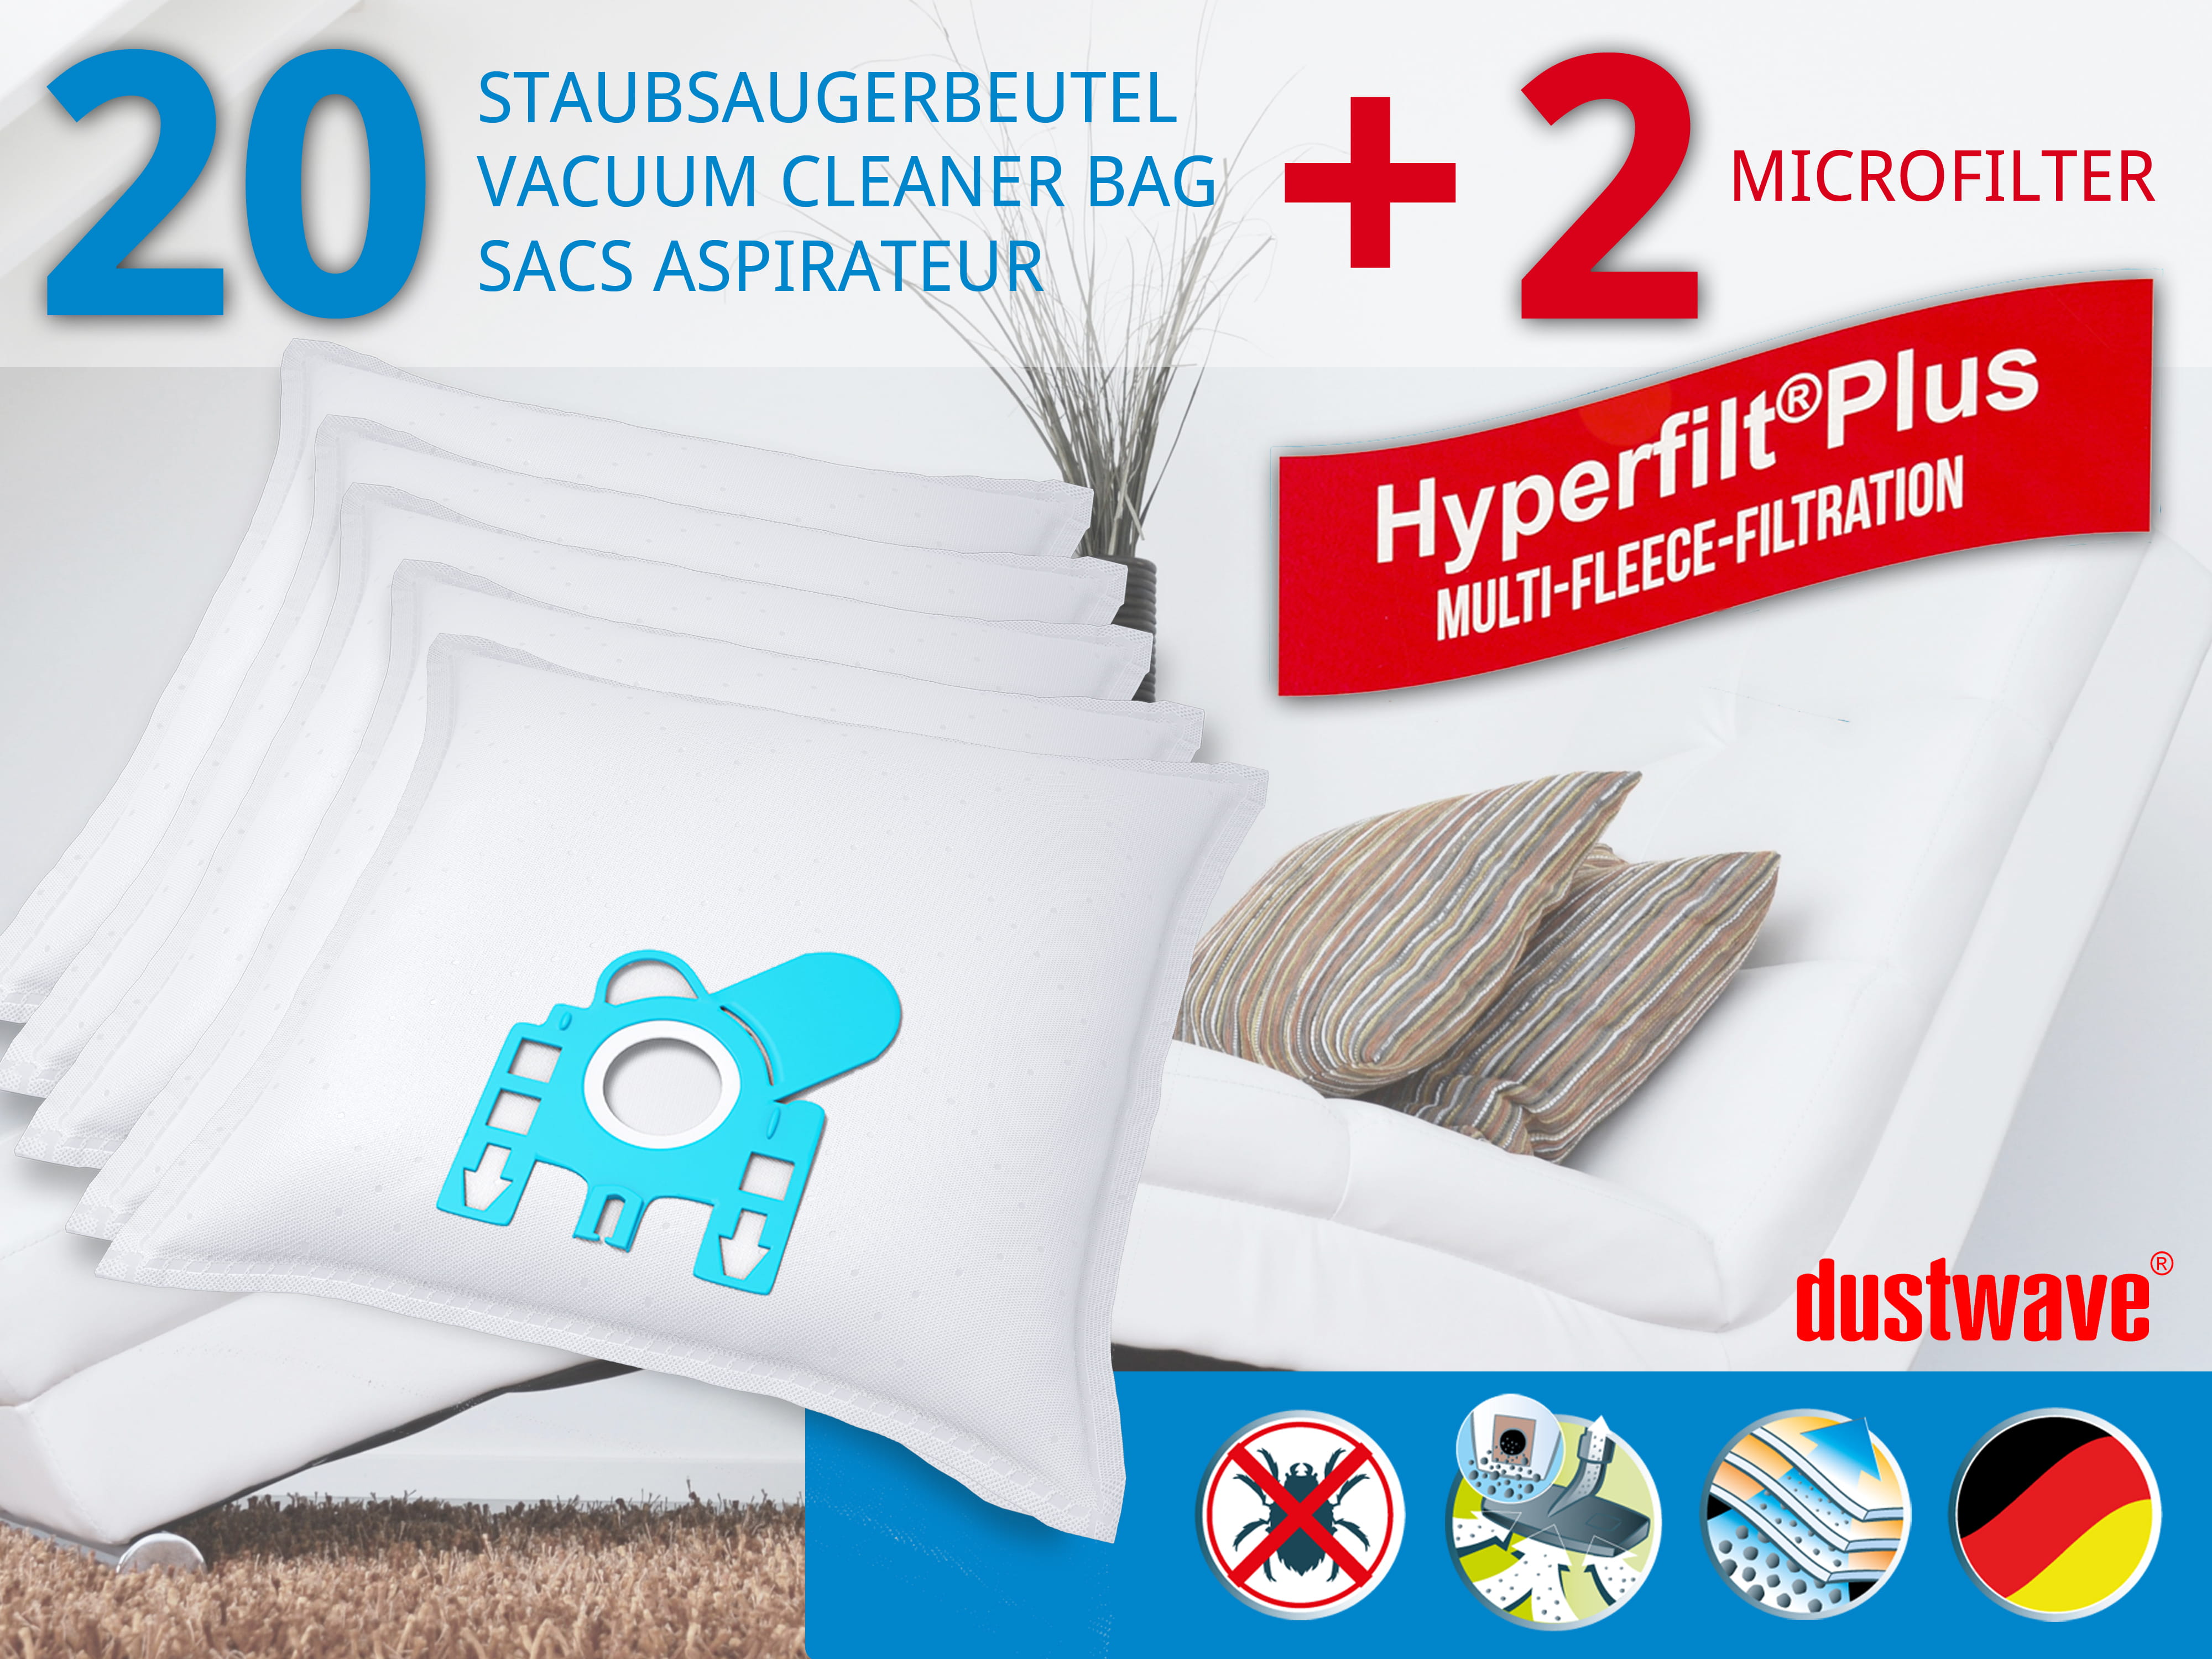 Dustwave® 20 Staubsaugerbeutel für Hoover T5755 / TRT5755 - hocheffizient, mehrlagiges Mikrovlies mit Hygieneverschluss - Made in Germany